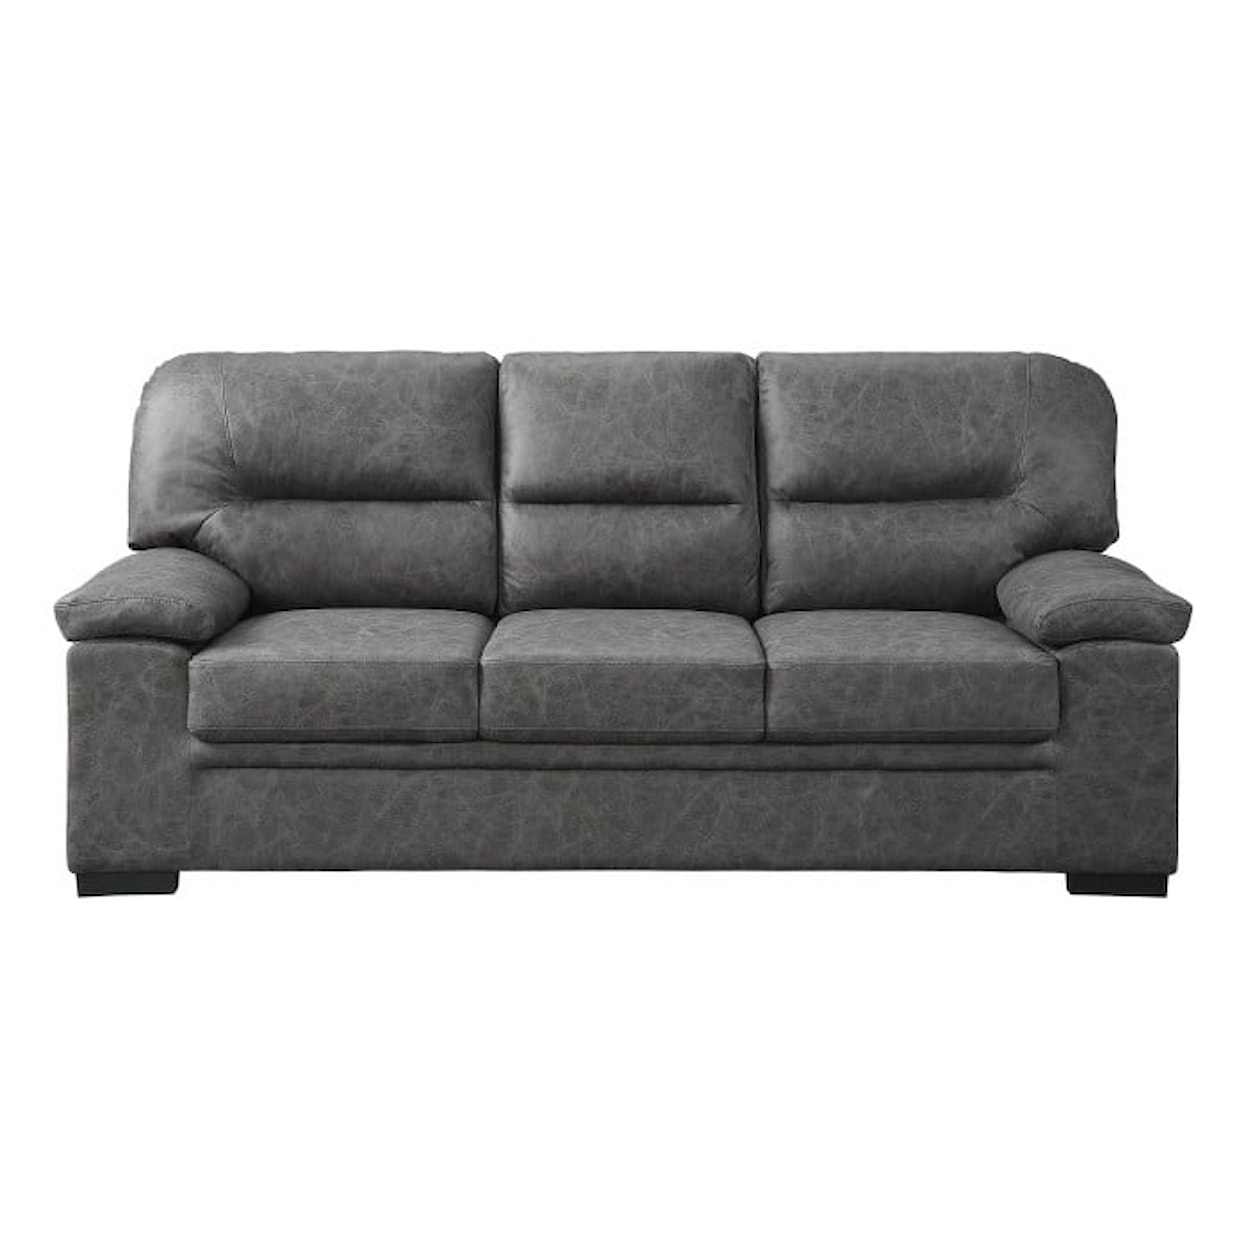 Homelegance Furniture Michigan Sofa